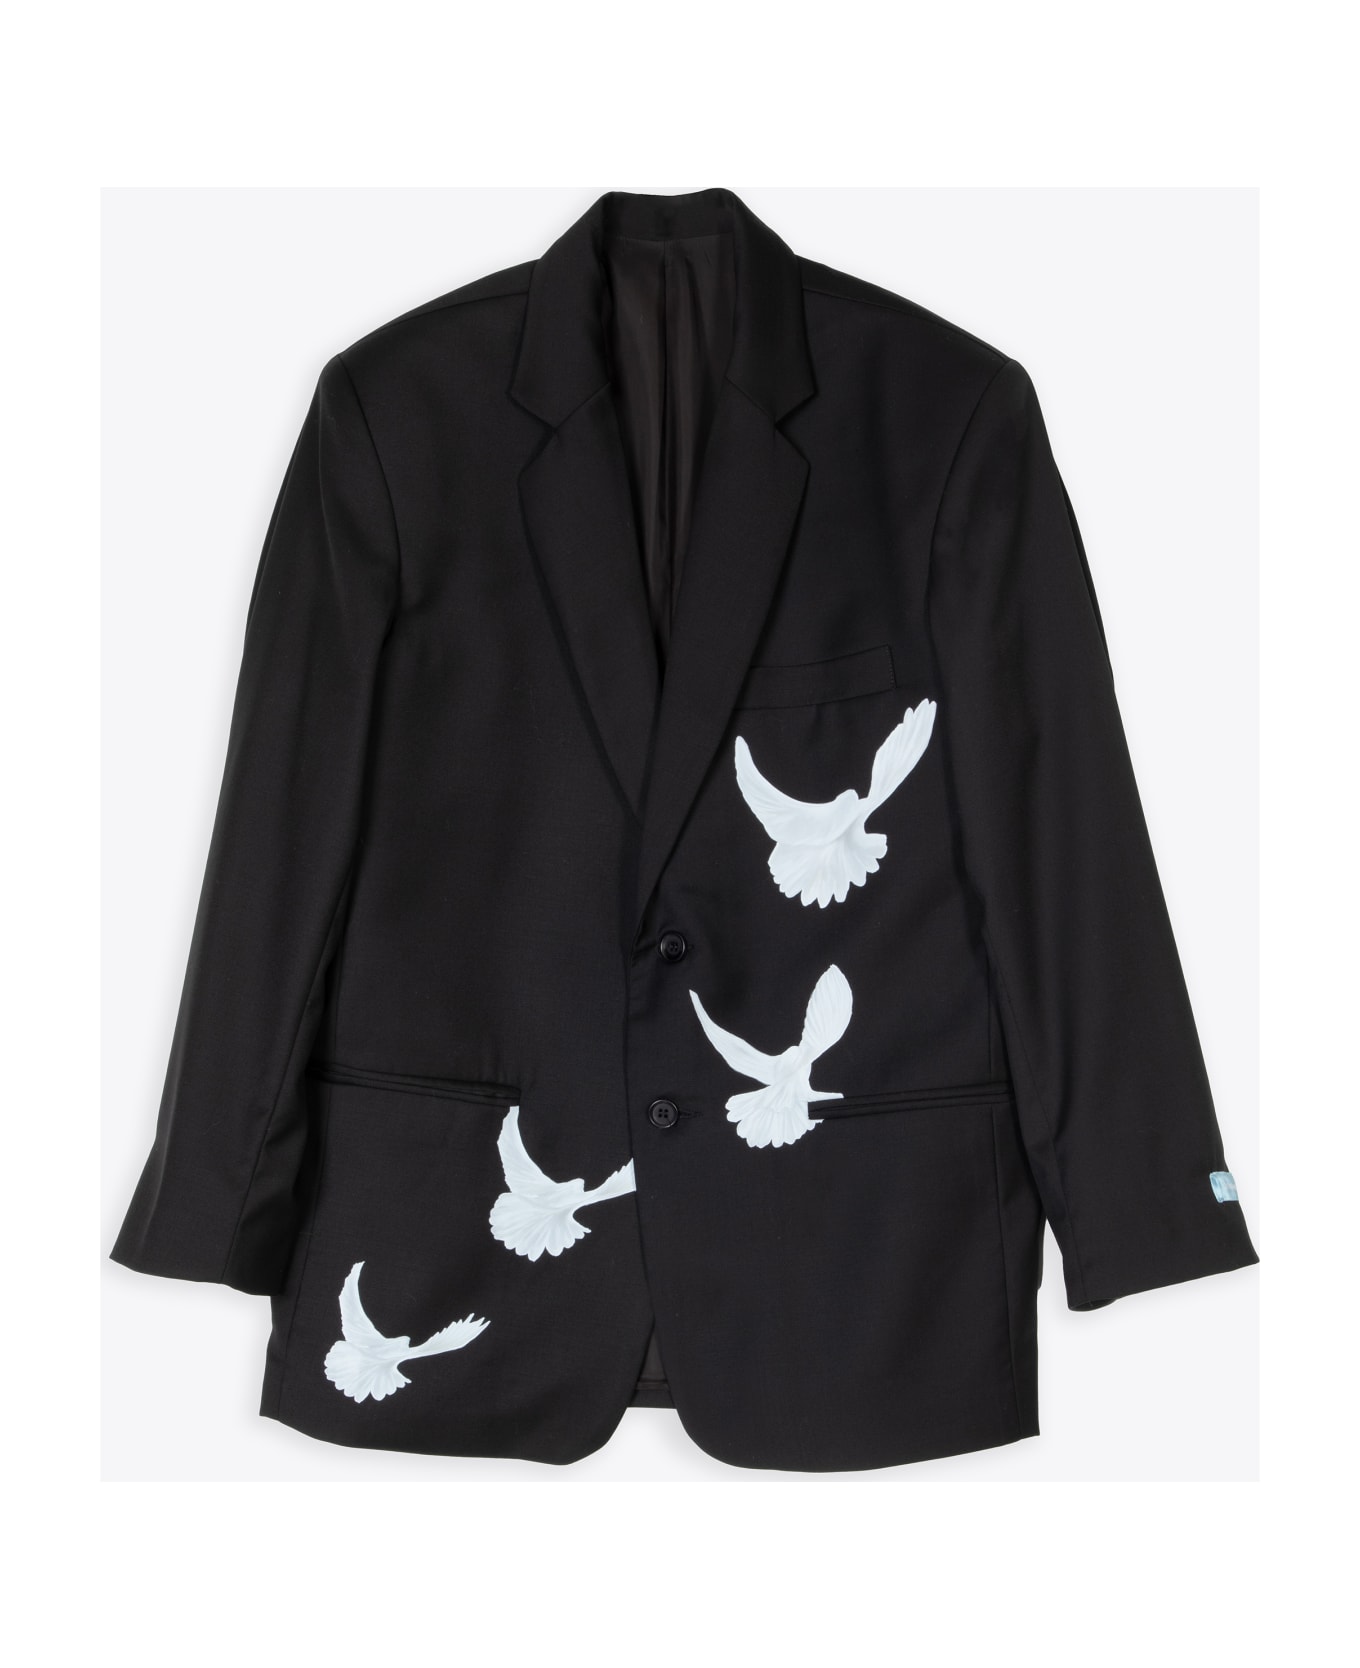 3.Paradis Wool Blazer 'singing Doves' Black wool tailored blazer with doves print - Singing doves blazer - Nero